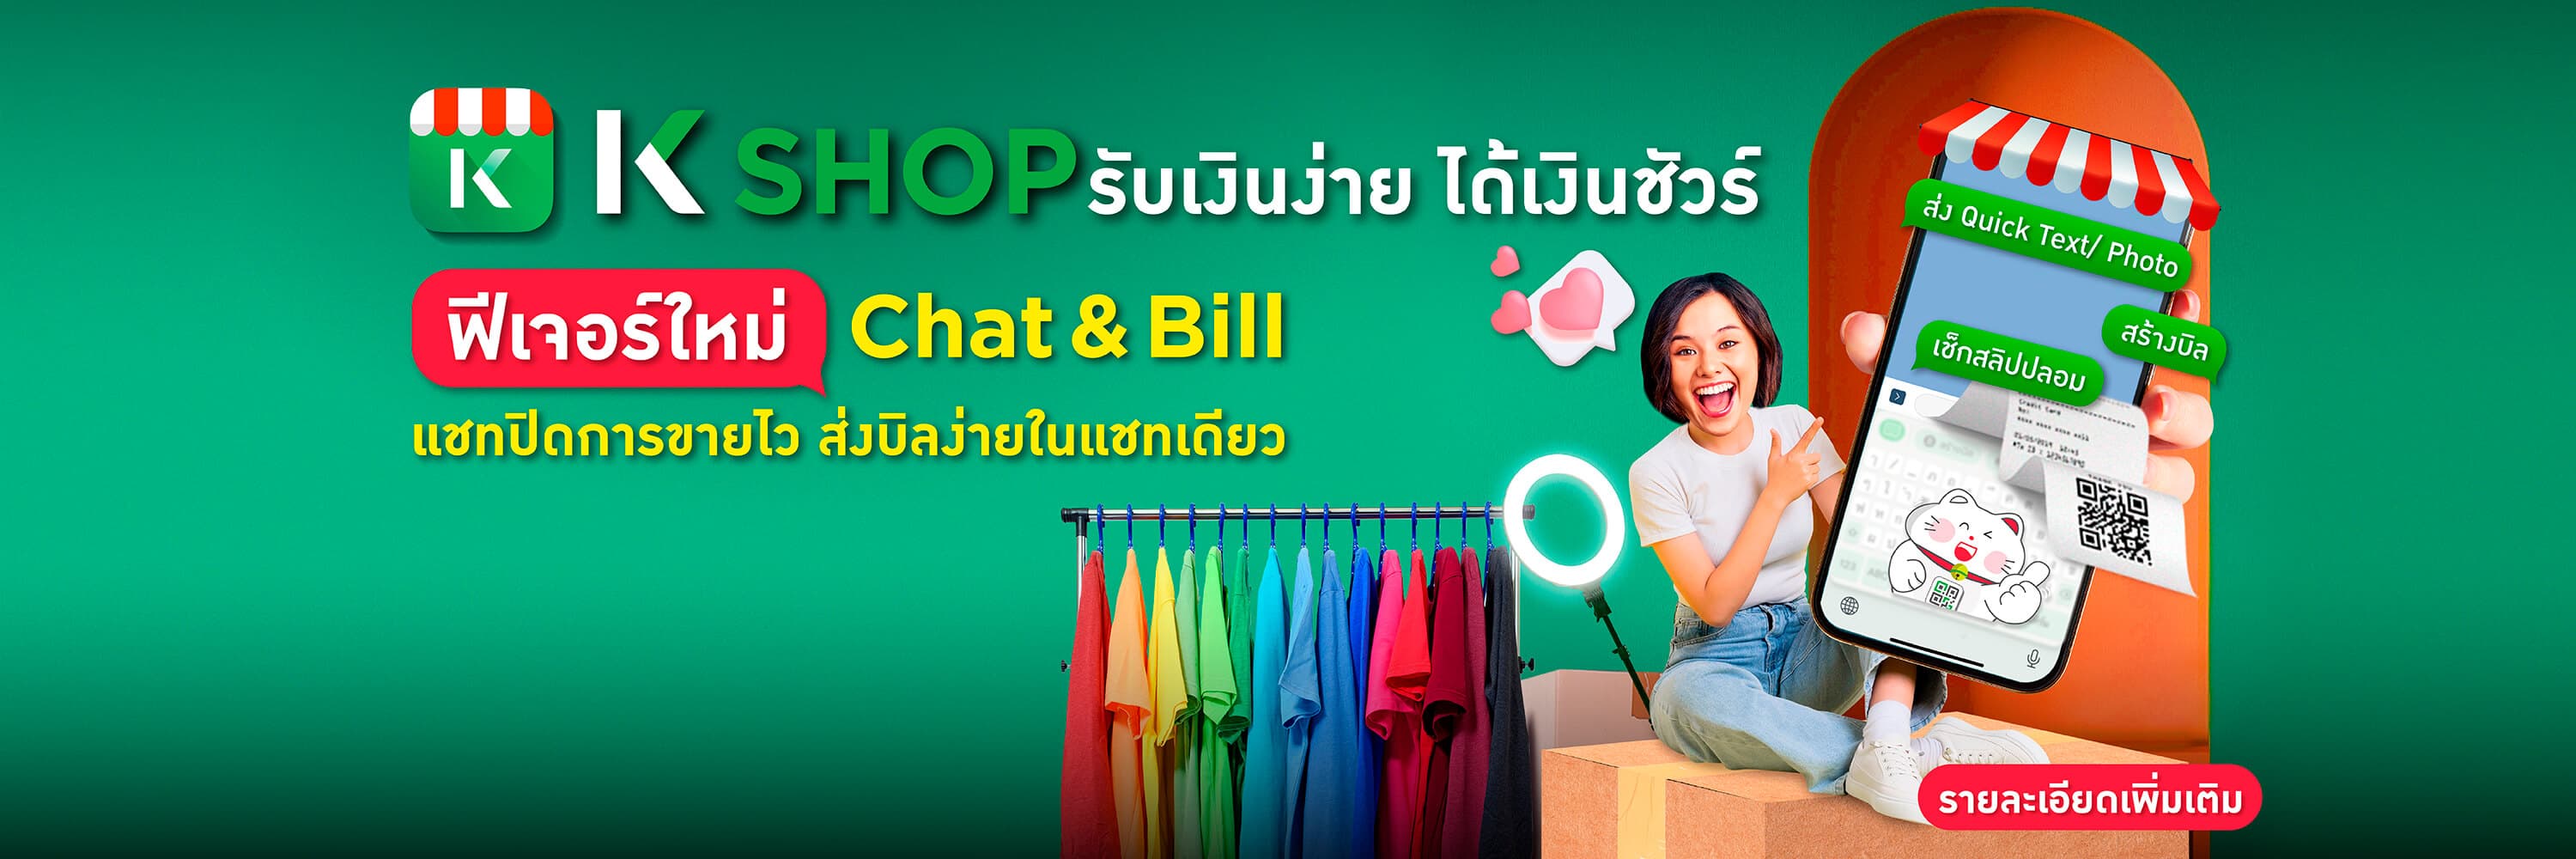 แอปจัดการร้านค้า QR รับเงิน สร้าง payment link mPOS บัตรเครดิต Chat & Bill เรียกเก็บเงินในแชท รับเงิน Alipay WeChat Pay แจ้งเตือนเงินเข้า